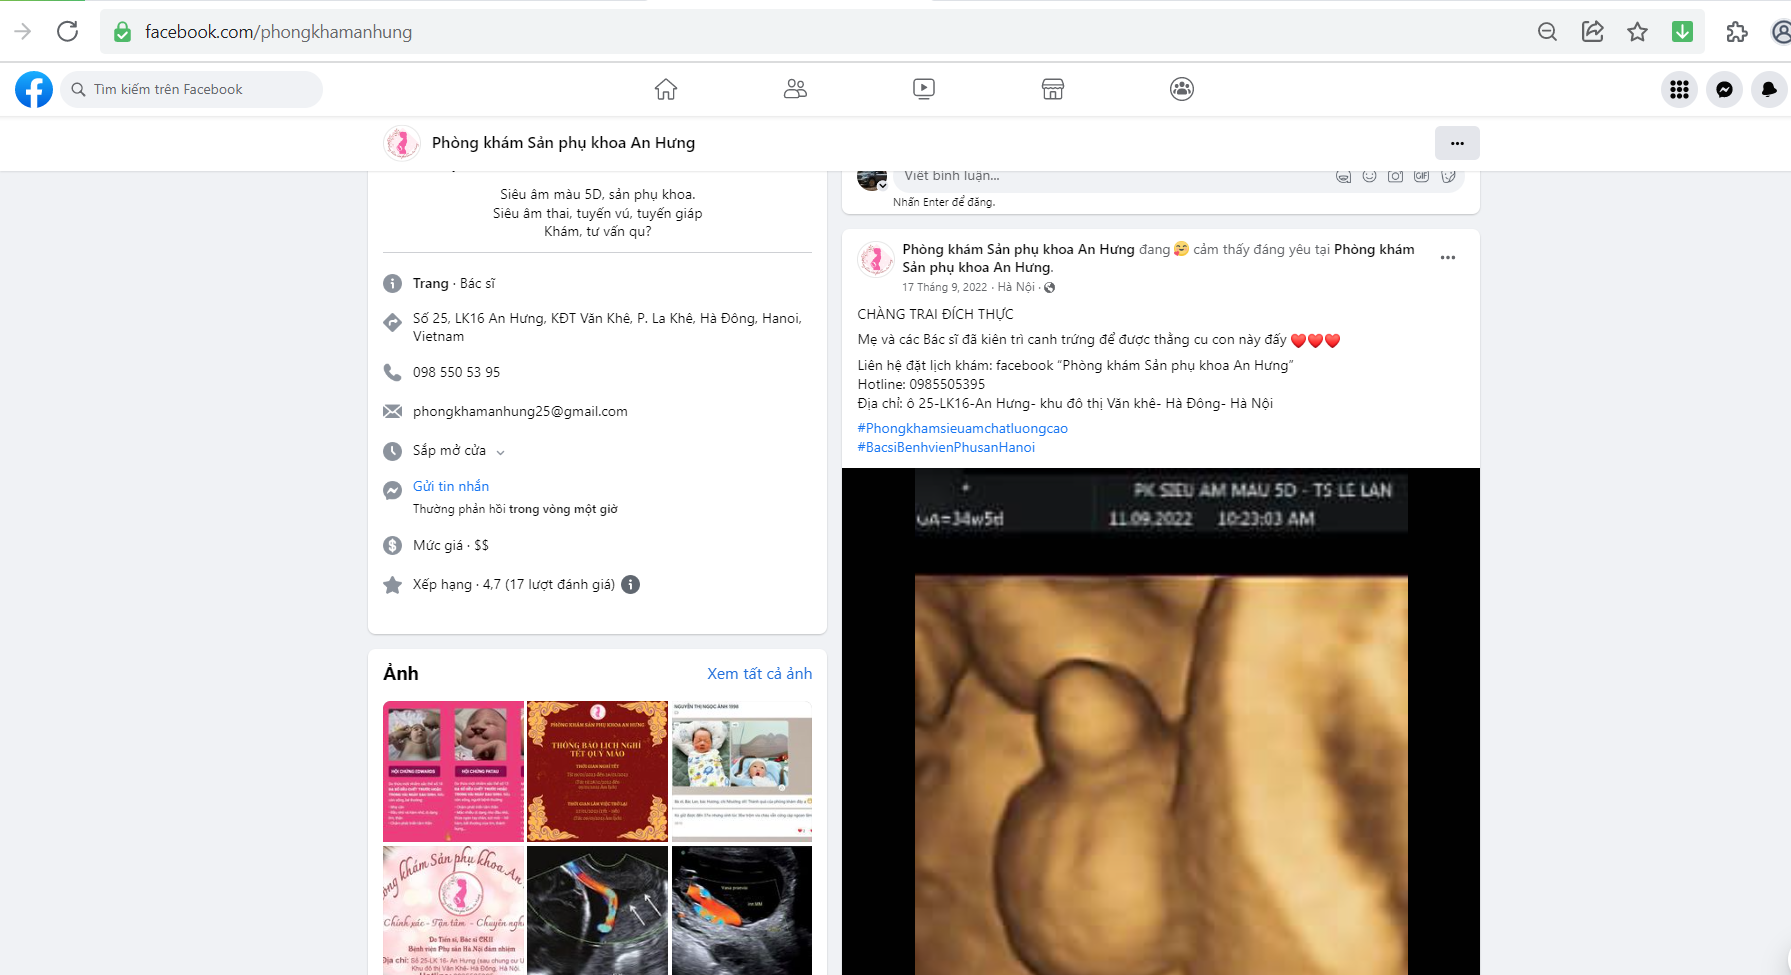 Phòng khám phụ sản An Hưng vô tư tiết lộ giới tính thai nhi trái quy định: Sở Y tế Hà Nội cần vào cuộc